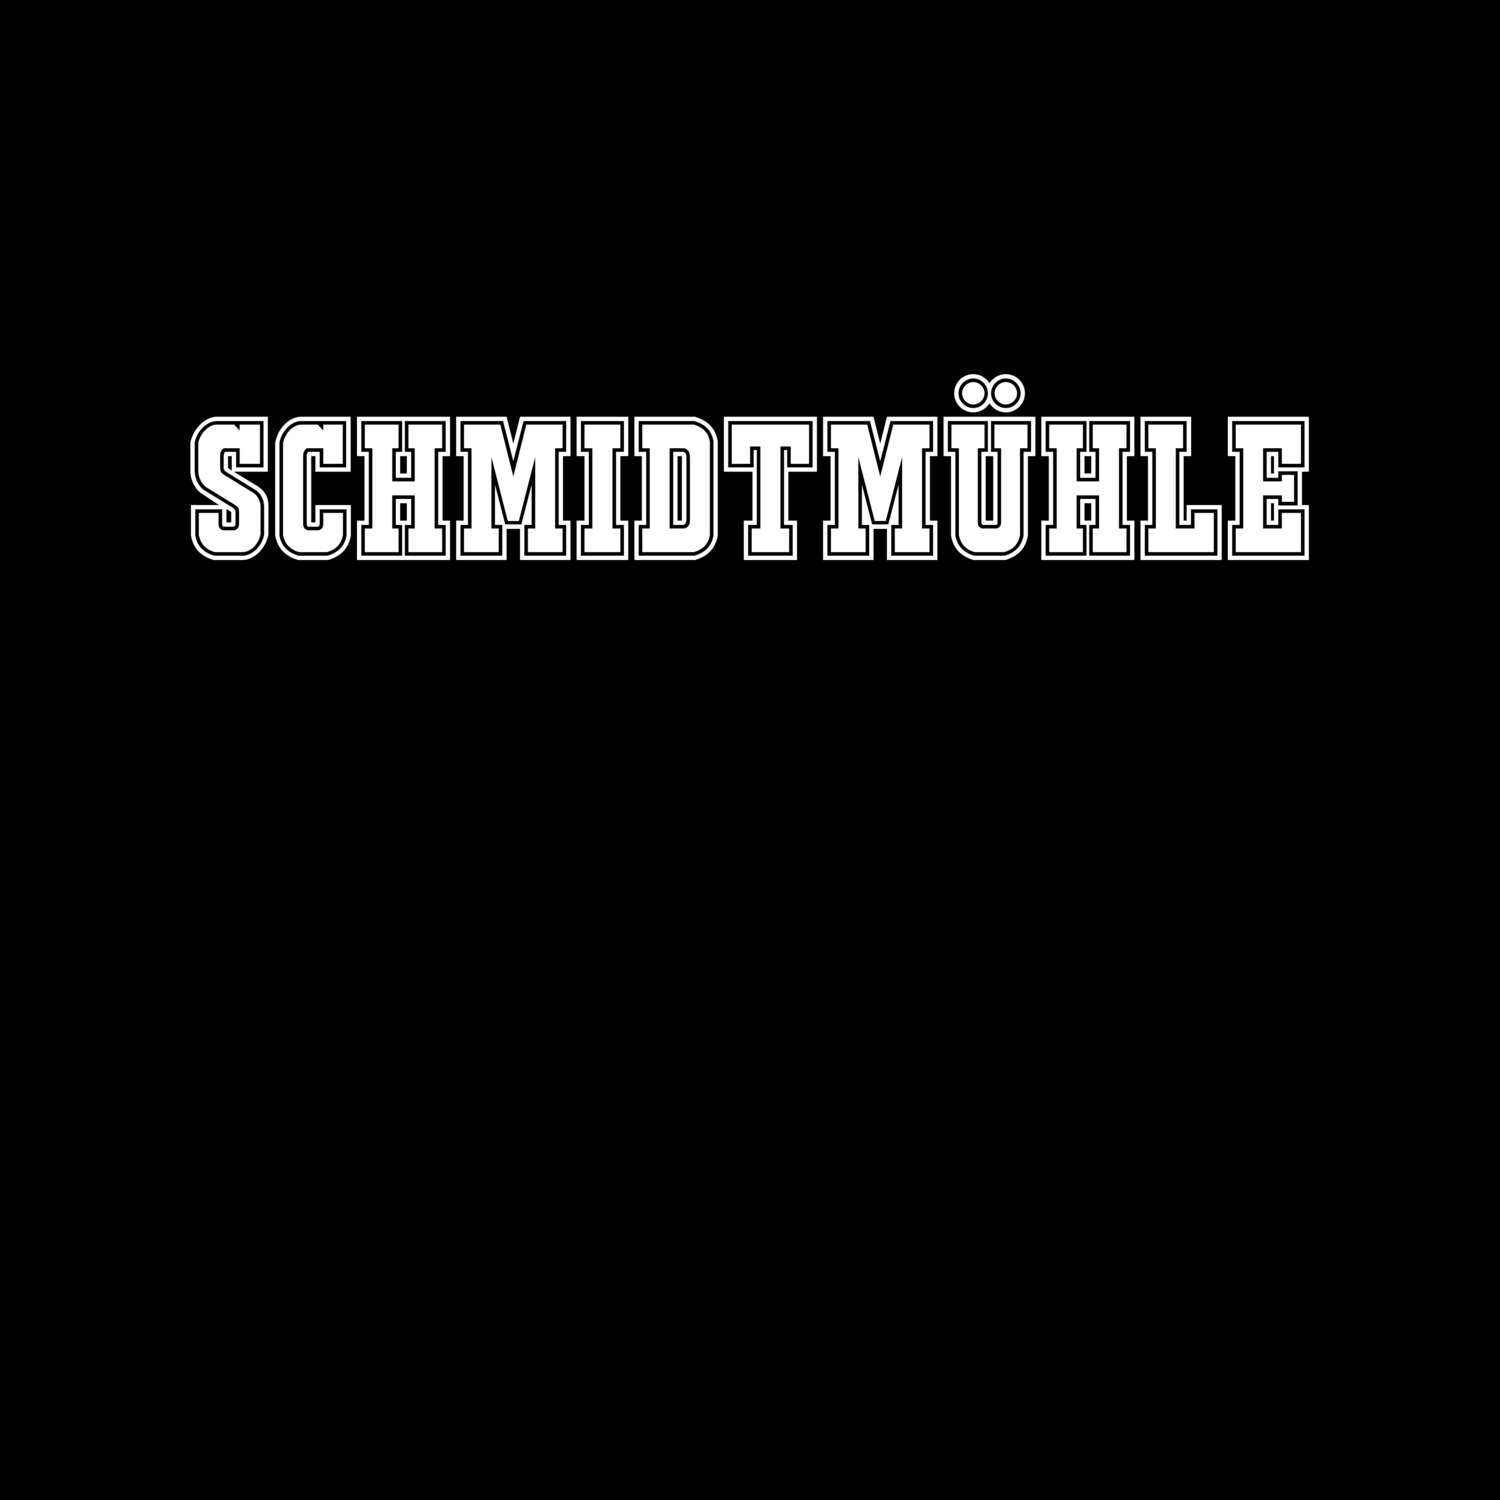 Schmidtmühle T-Shirt »Classic«